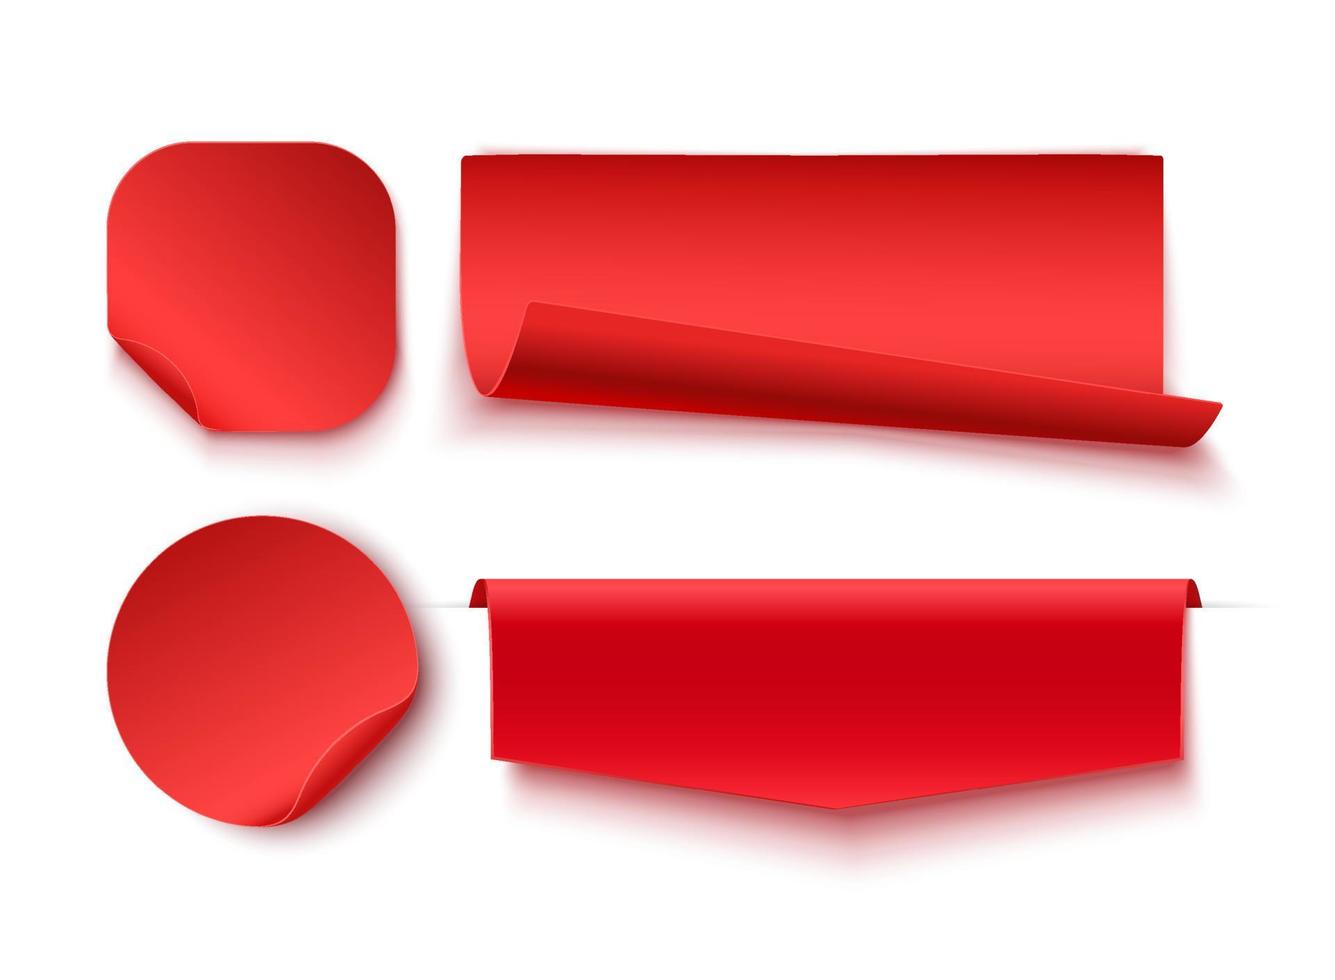 röd tom taggar, etiketter eller märken är isolerat på vit bakgrund. vektor